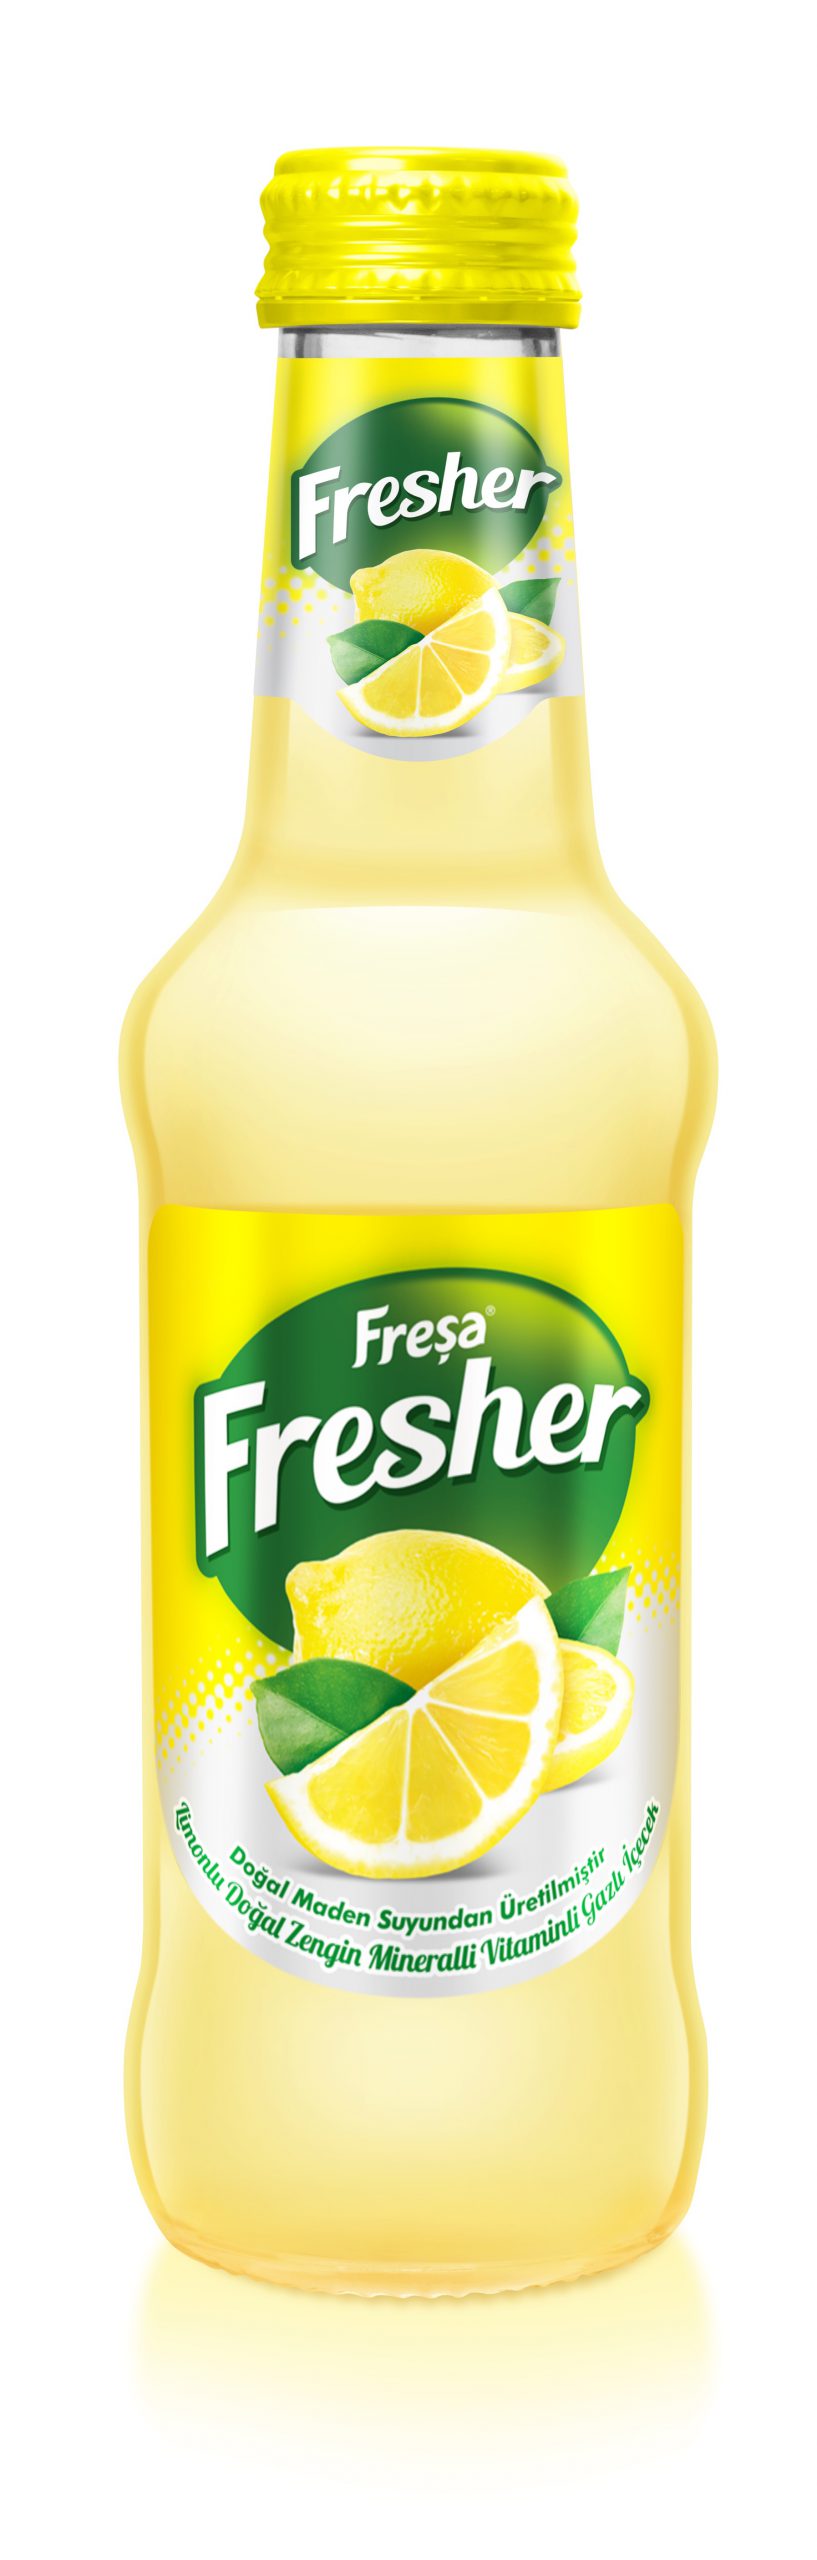 yazin-ferahlatan-serinlik-fresher-limon